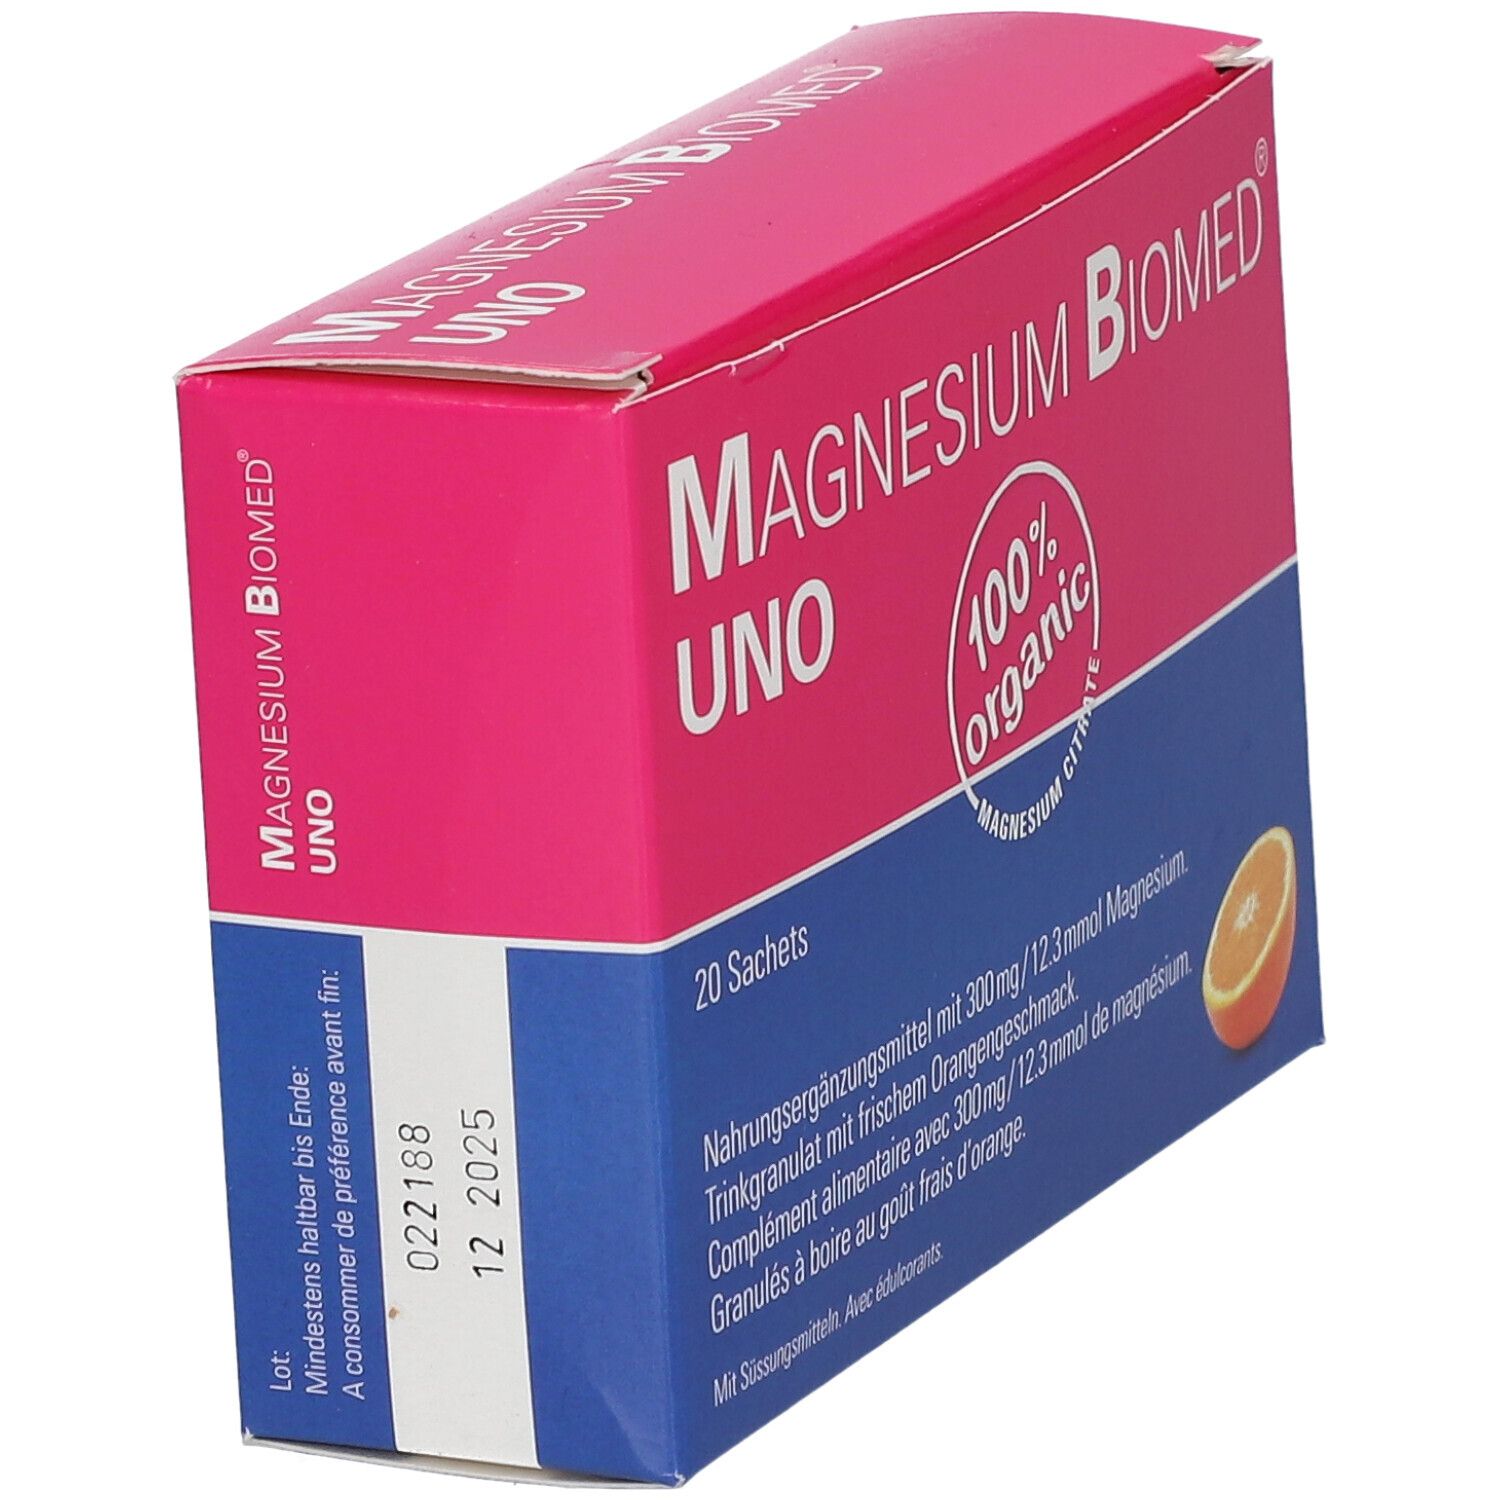 Magnésium Biomed® UNO